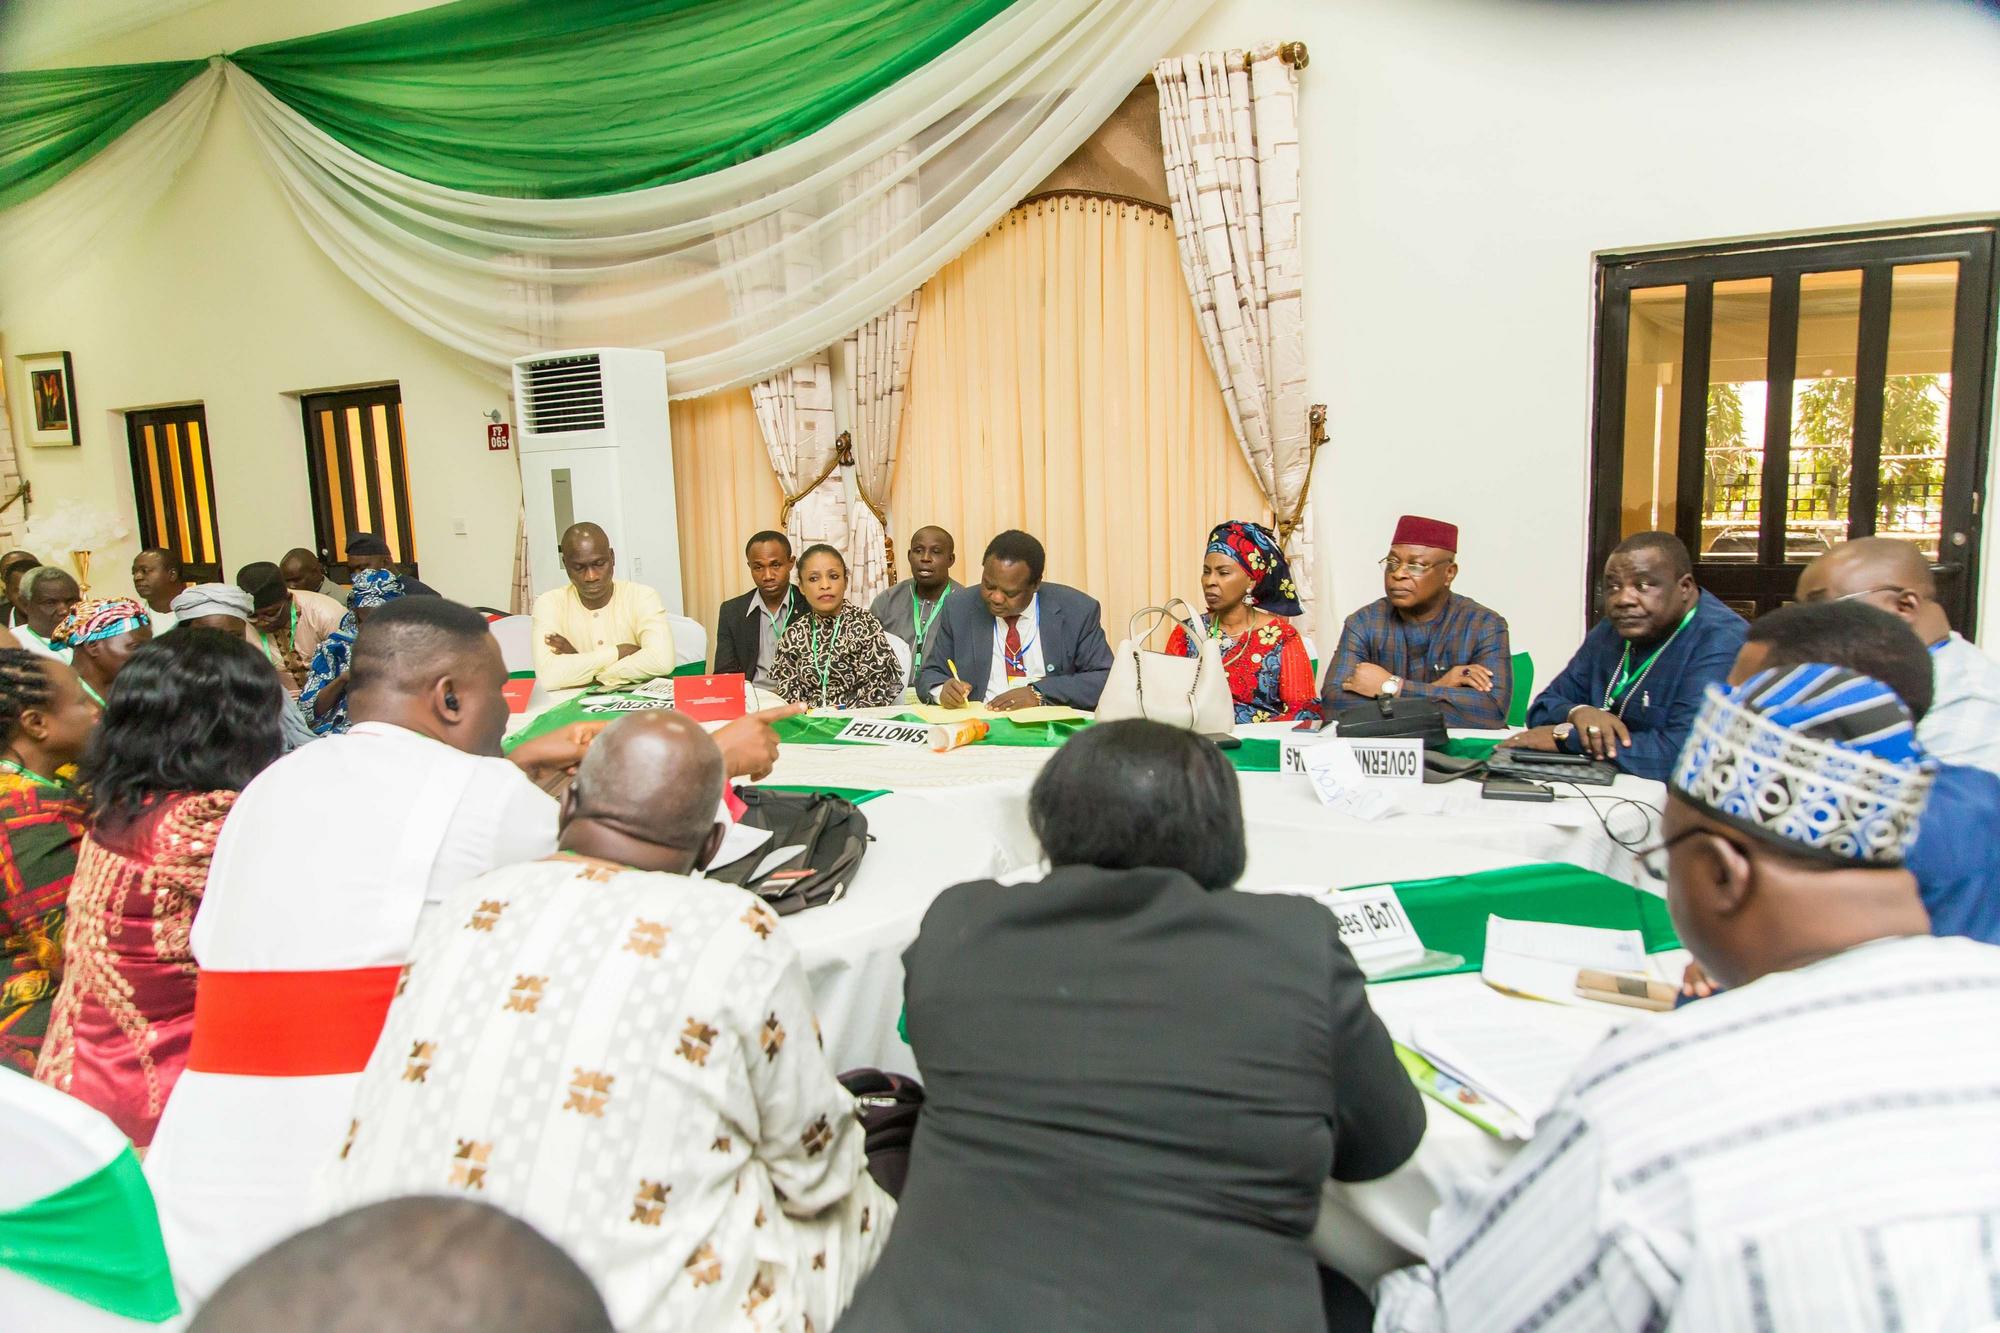 Los mediadores interconfesionales se esfuerzan por poner fin a la creciente violencia en Nigeria